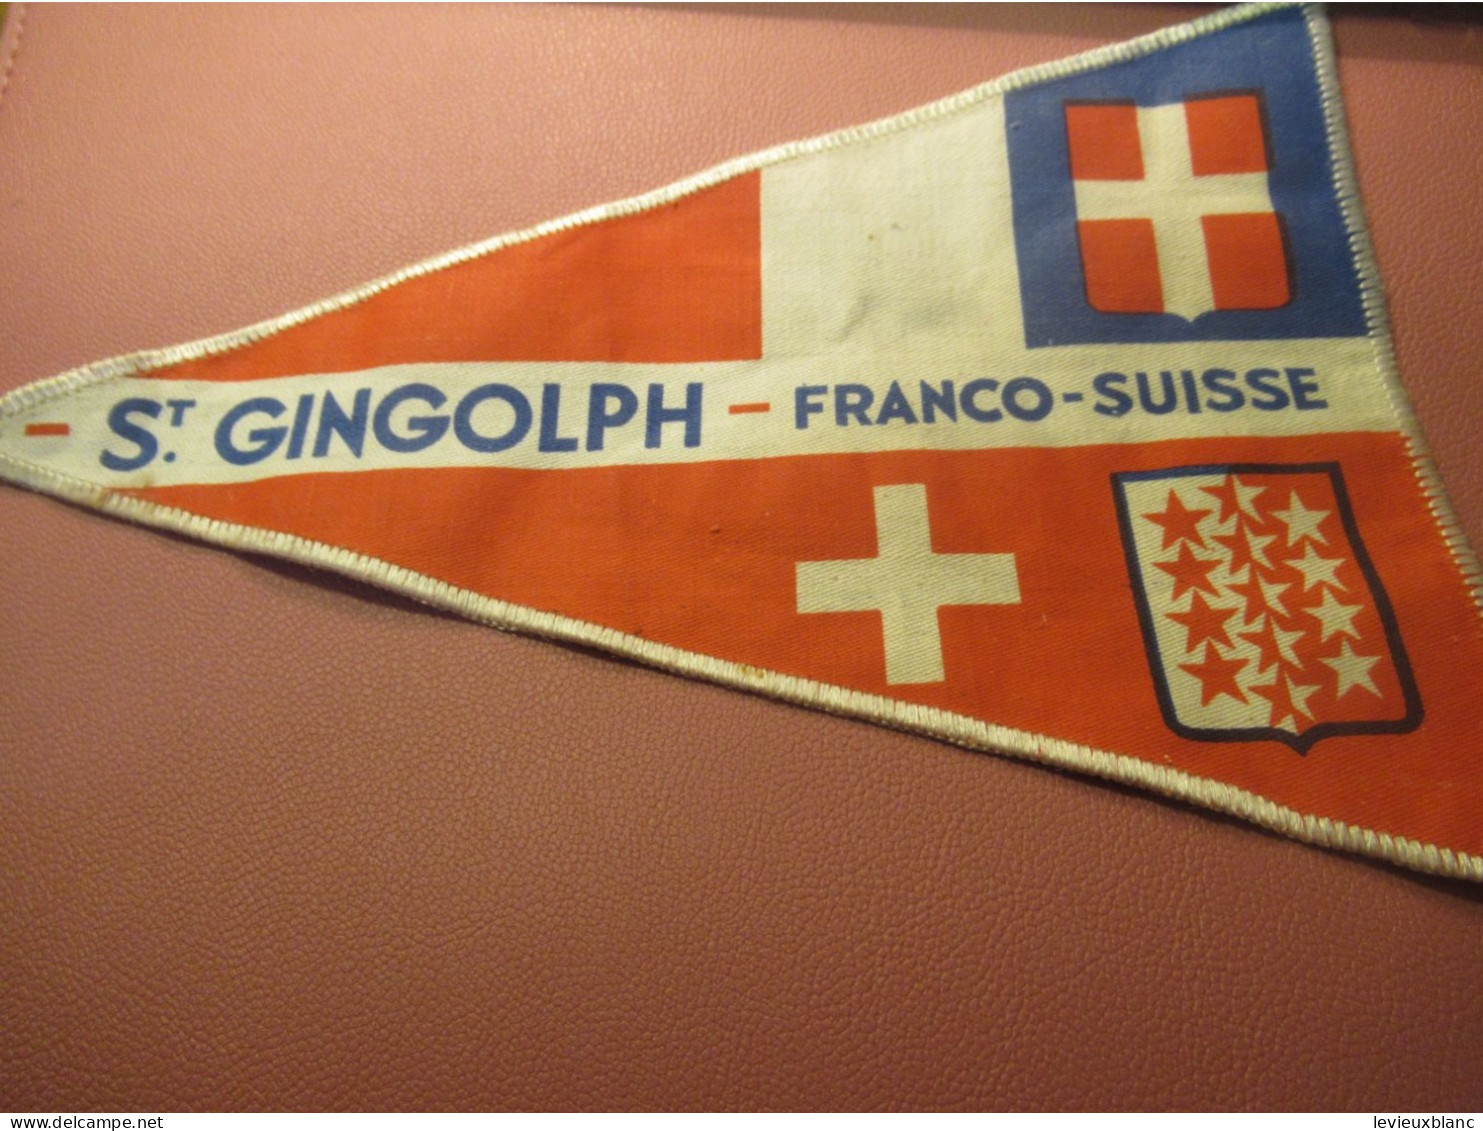 Fanion Touristique Ancien / St GINGOLPH - Franco-Suisse /Vers 1950                 DFA69 - Bandiere